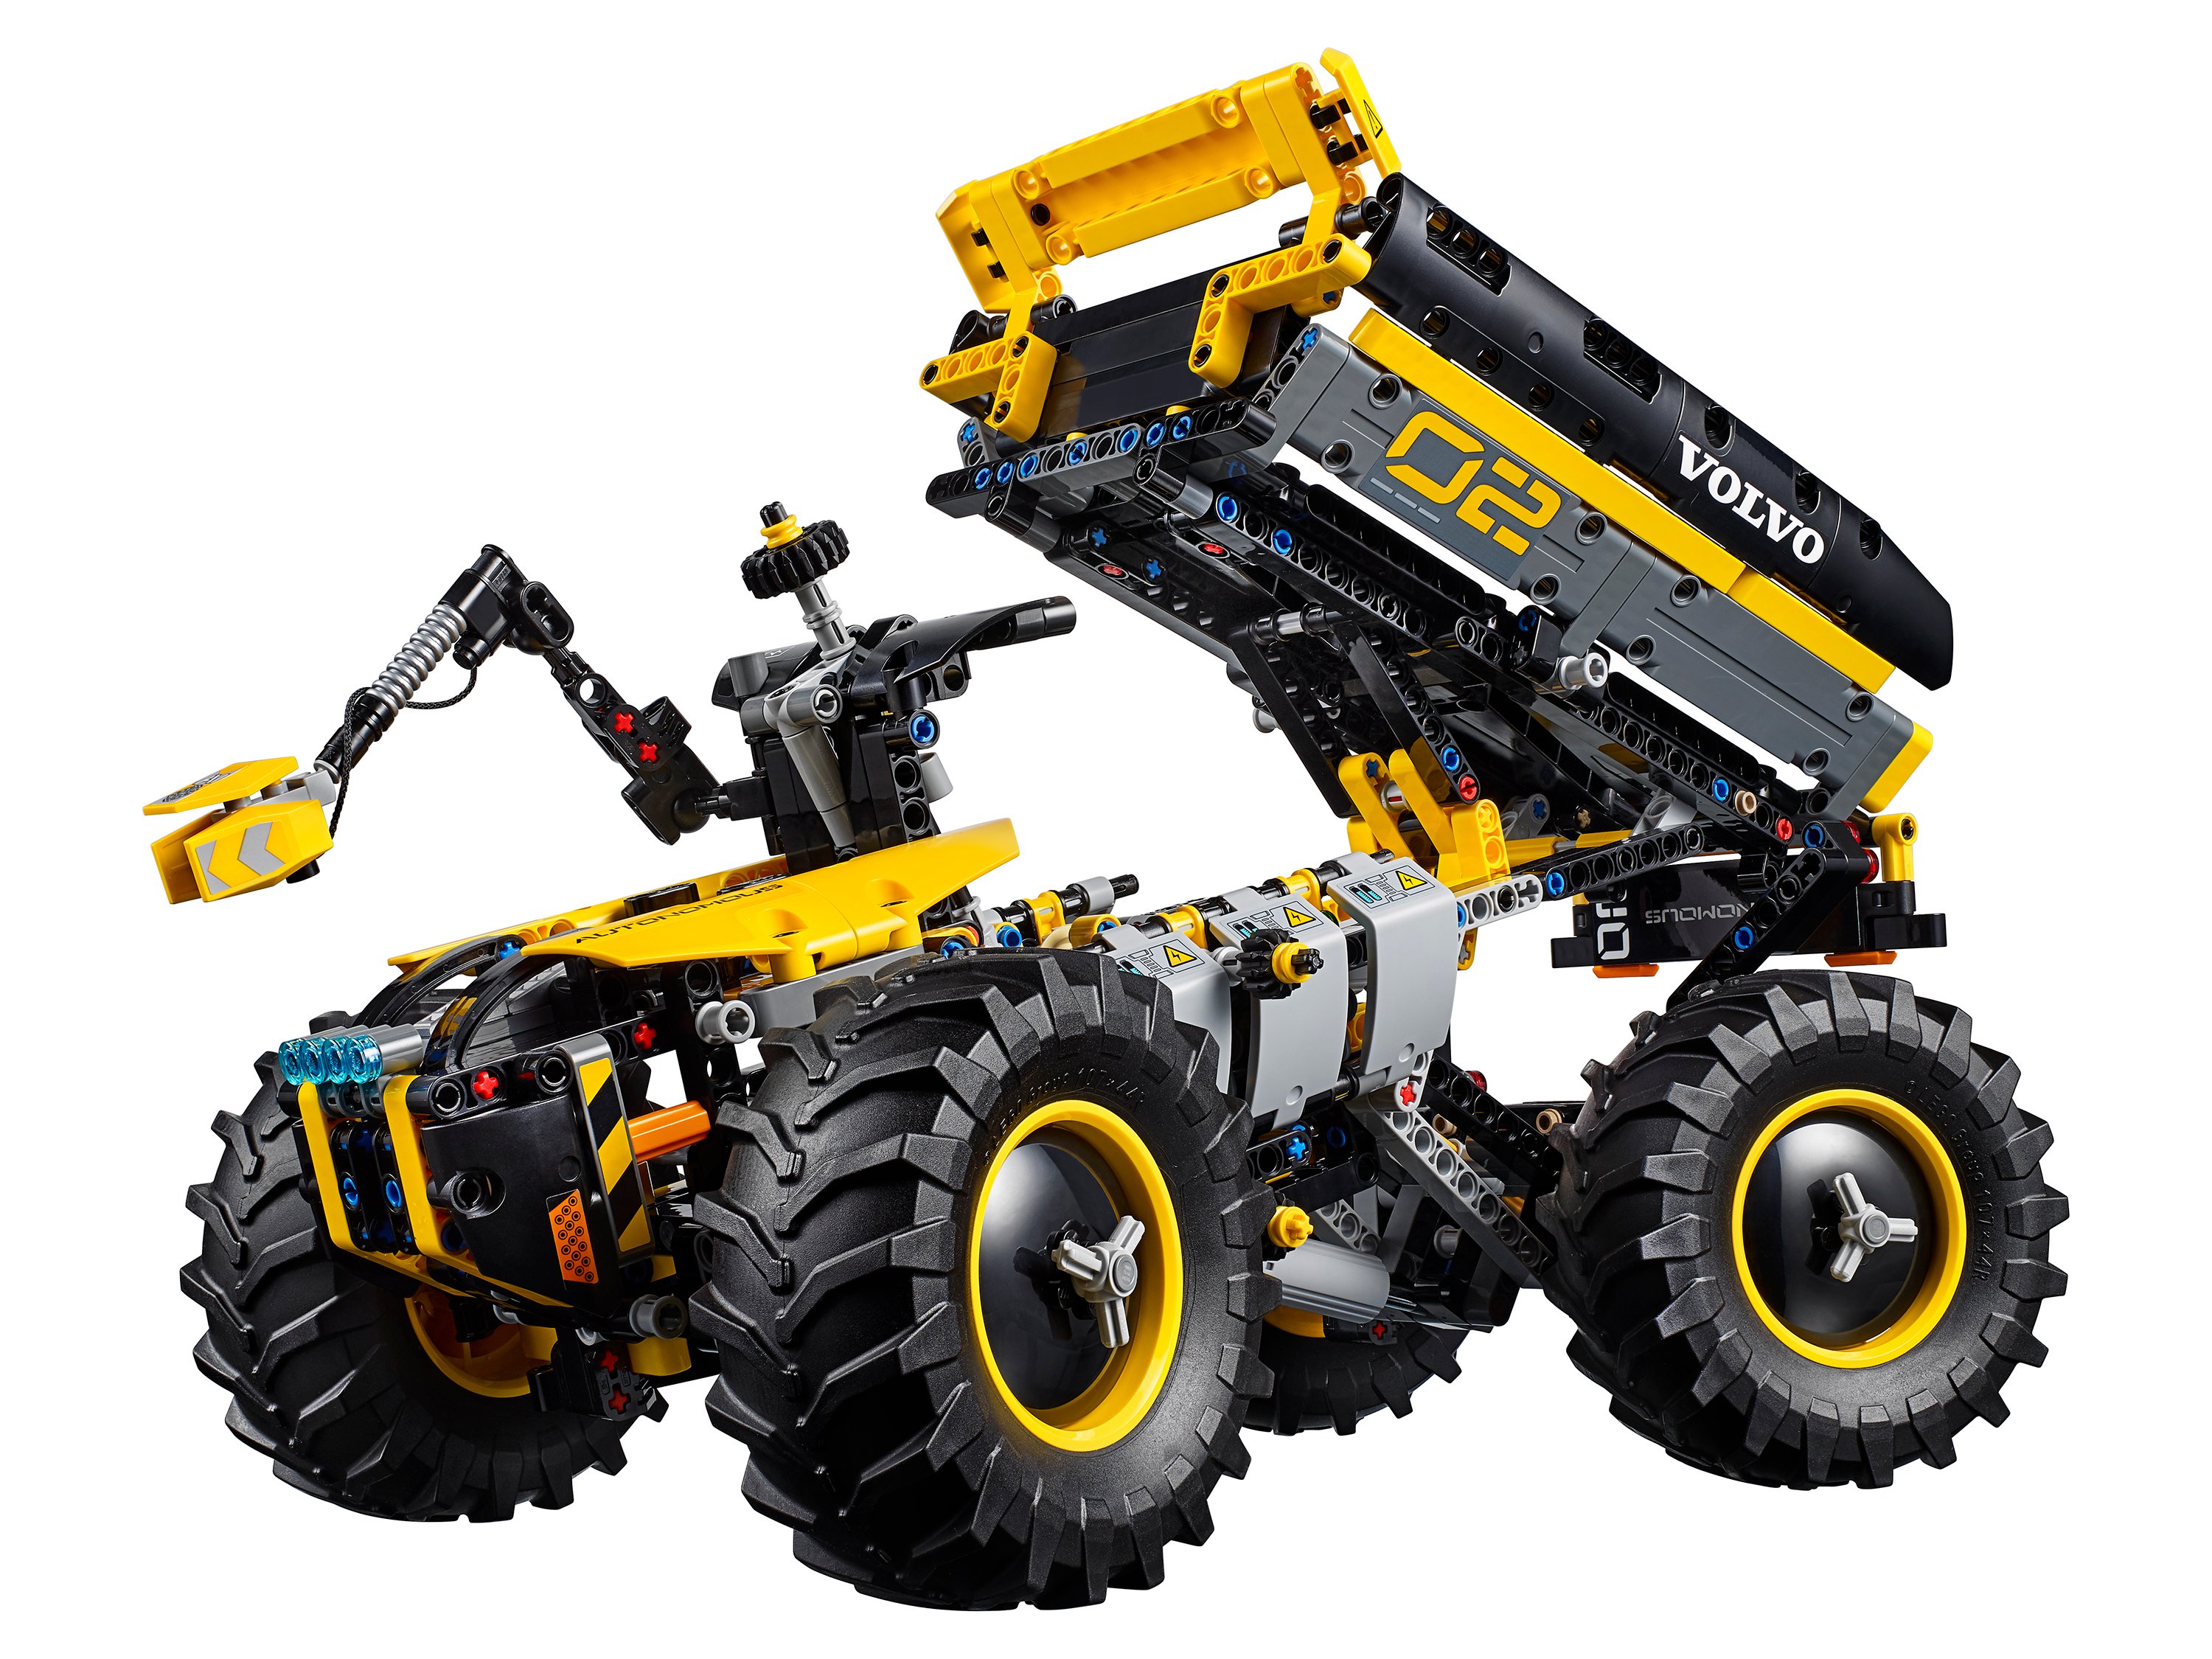 Lego Technic 42081 VOLVO колёсный погрузчик ZEUX